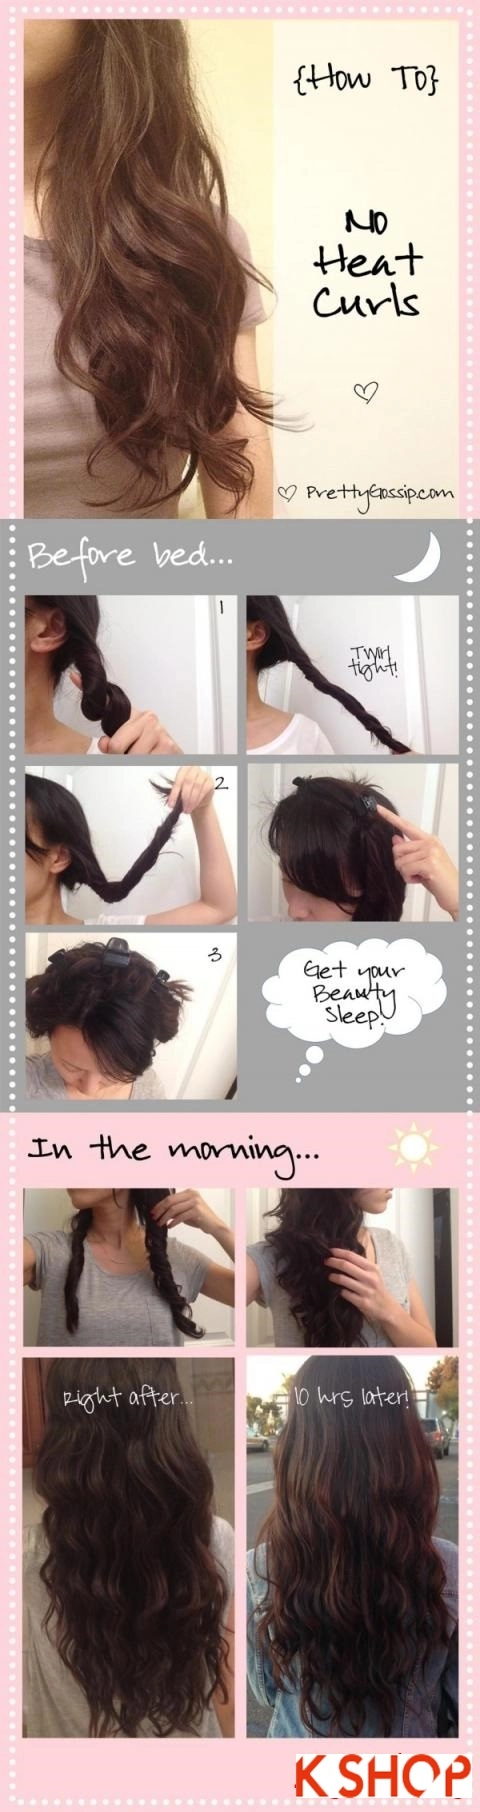 Hướng dẫn 4 cách làm mái tóc xoăn tự nhiên đẹp dễ làm cho bạn gái - 1